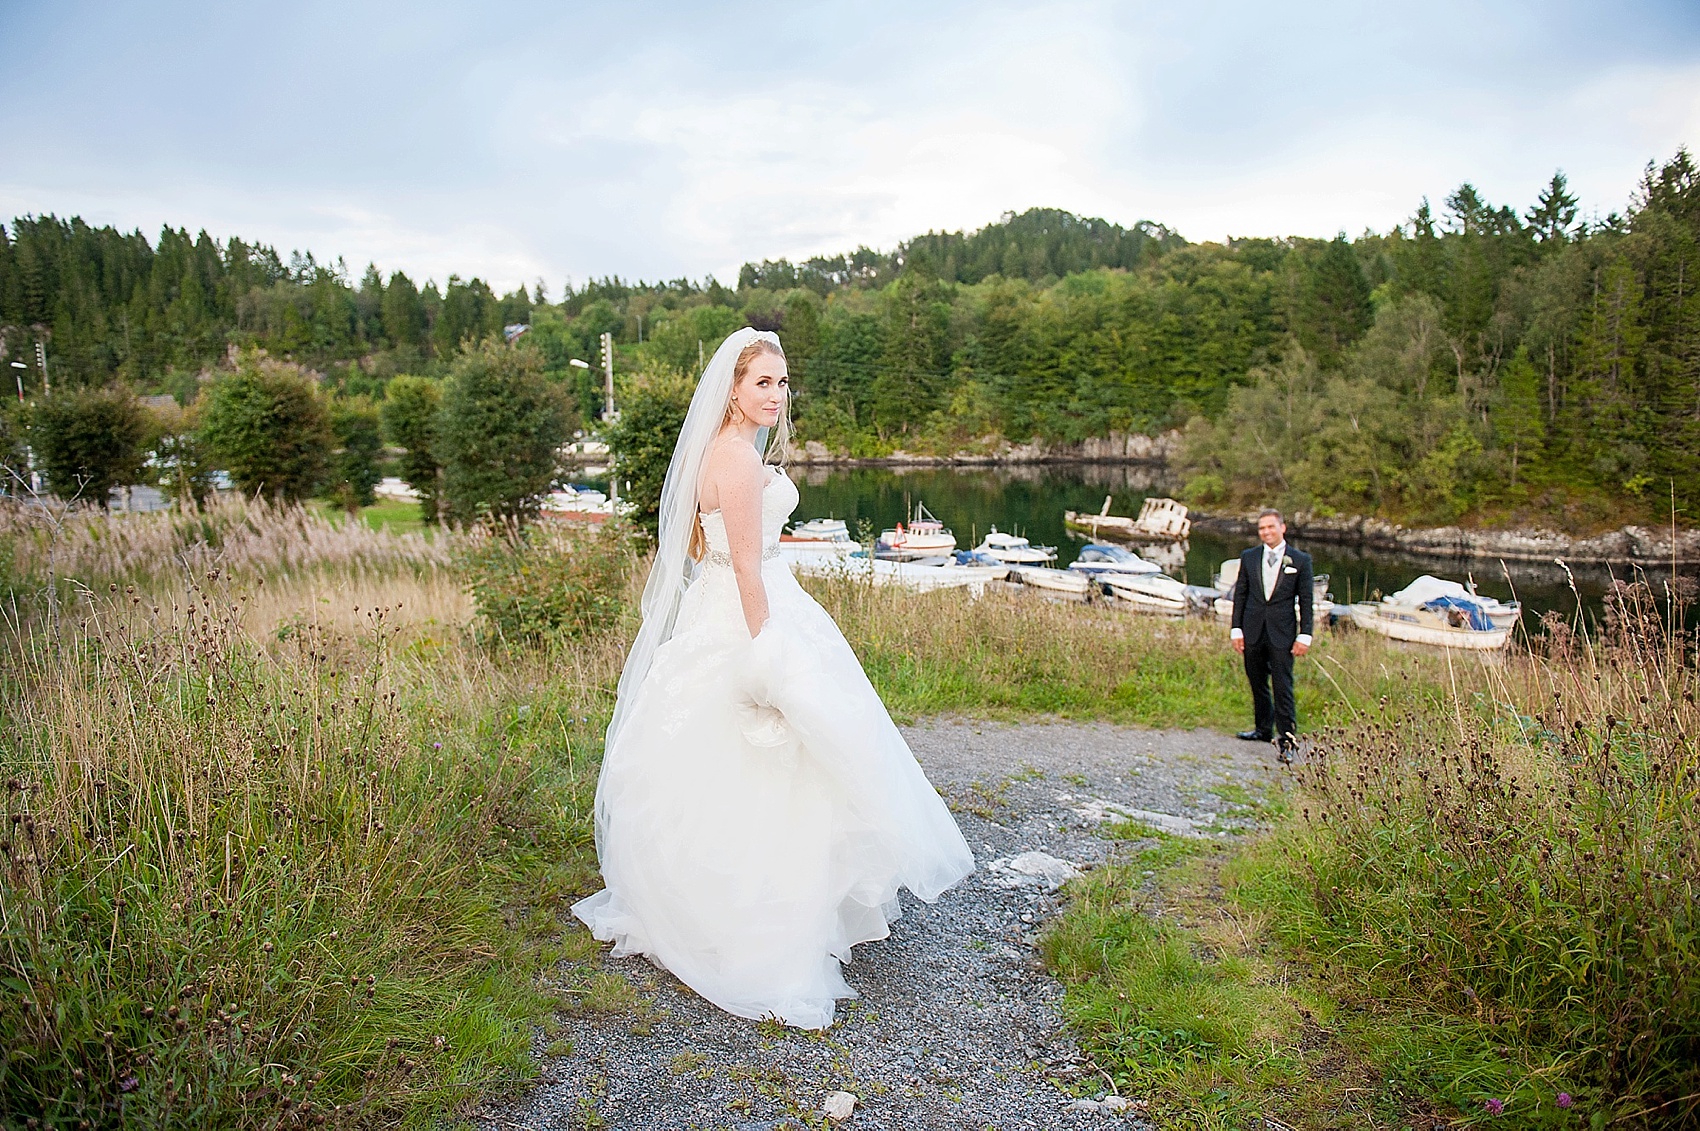 Bergen + Alvoen Wedding Photos • Norway, Summer • Cecilie + Patrick ...